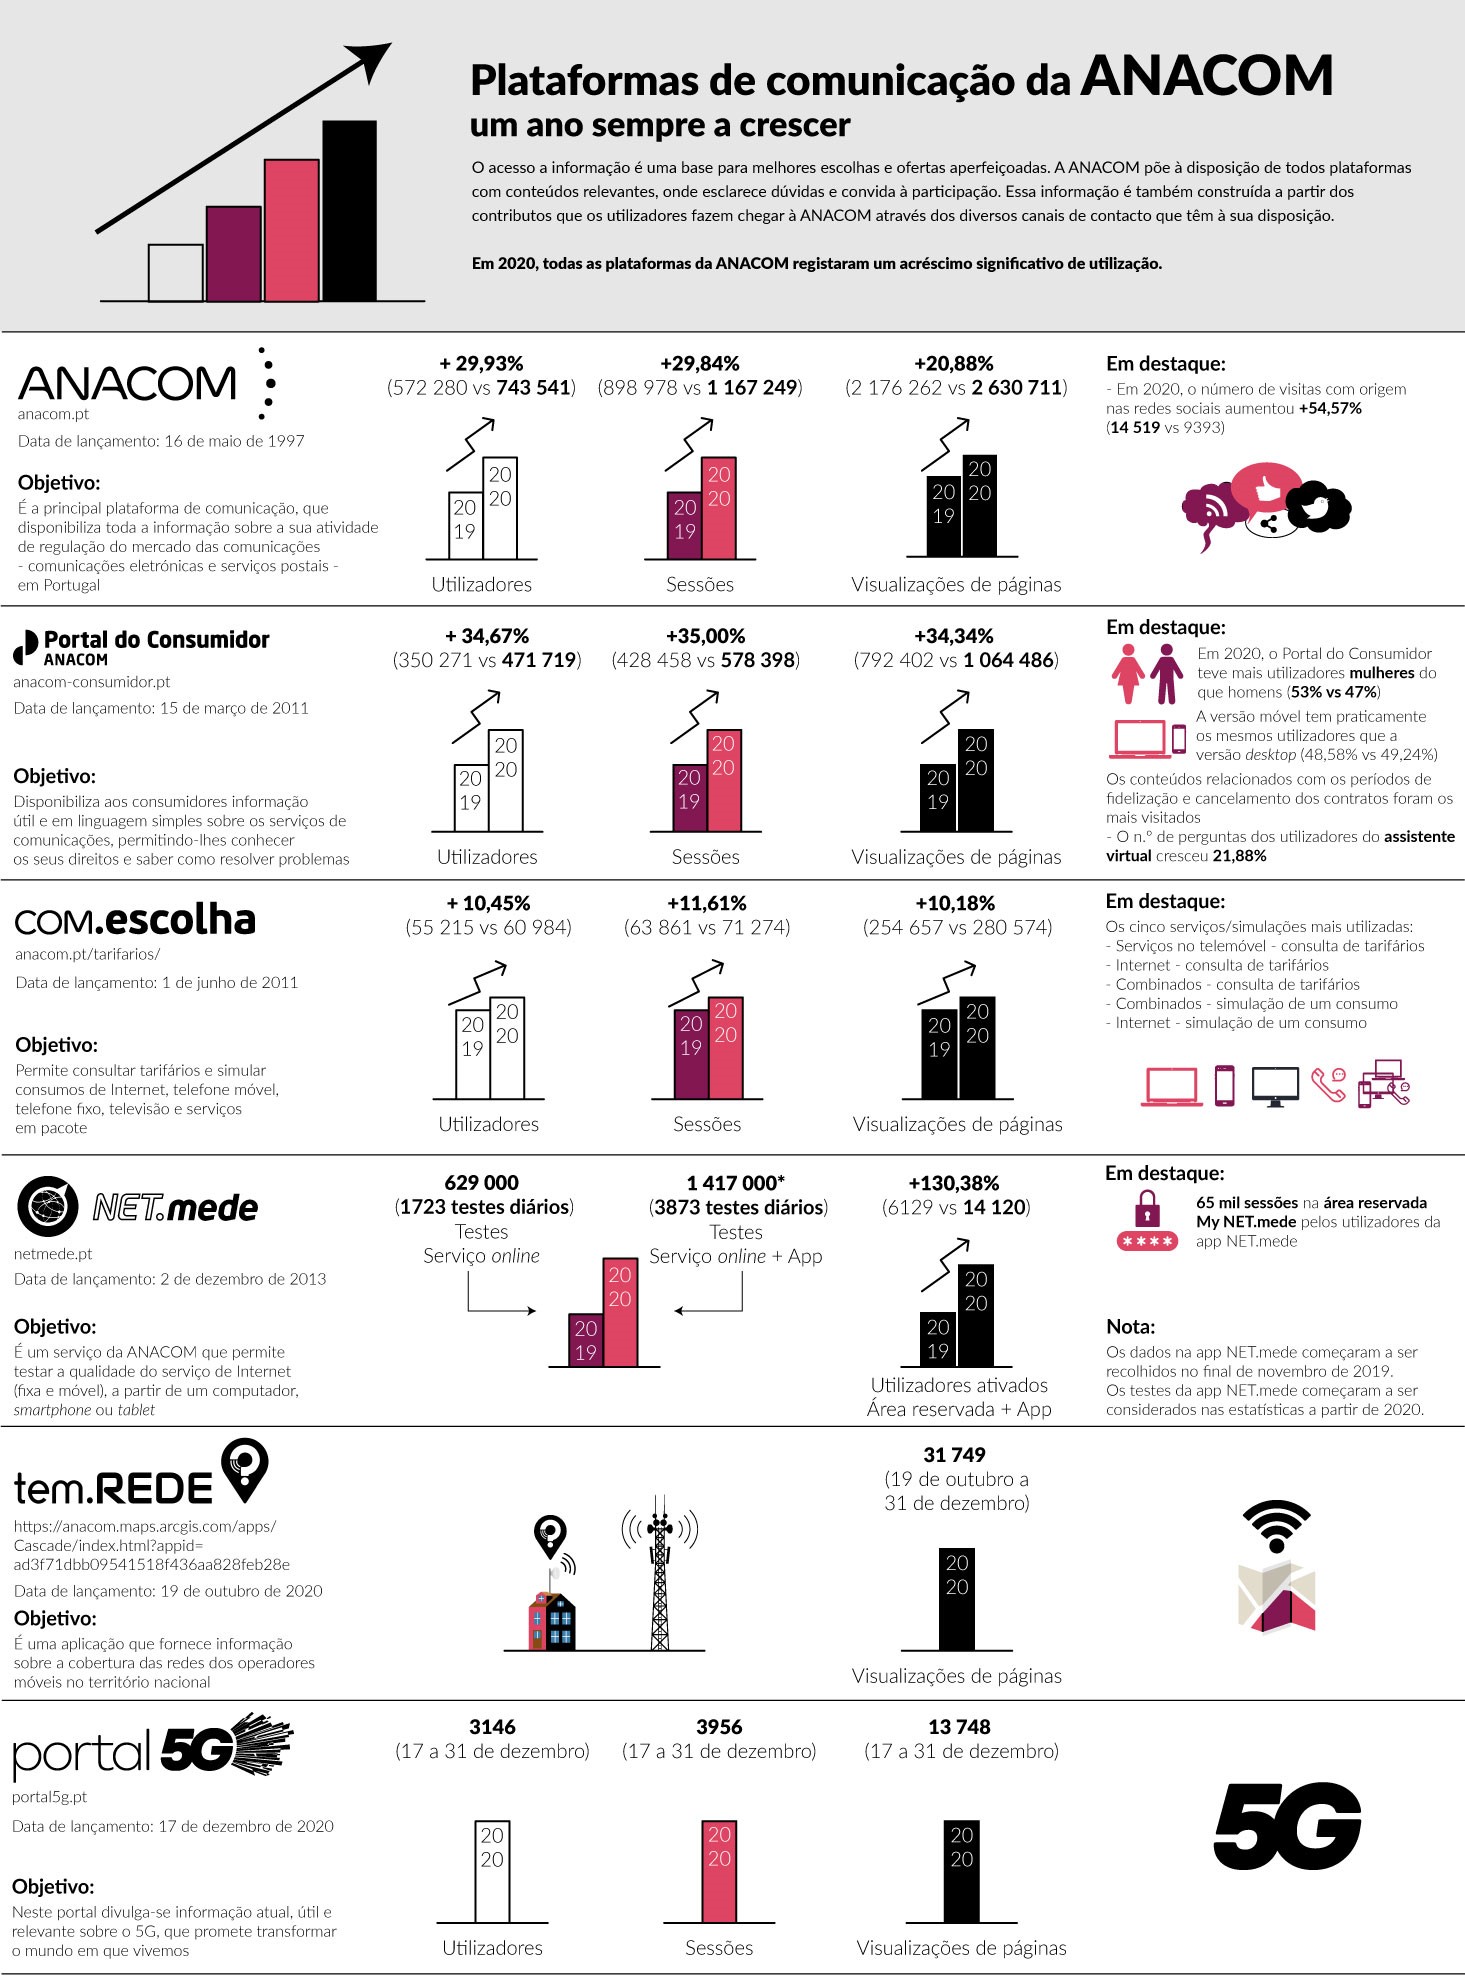 Infografia - Plataformas de Comunicação da ANACOM